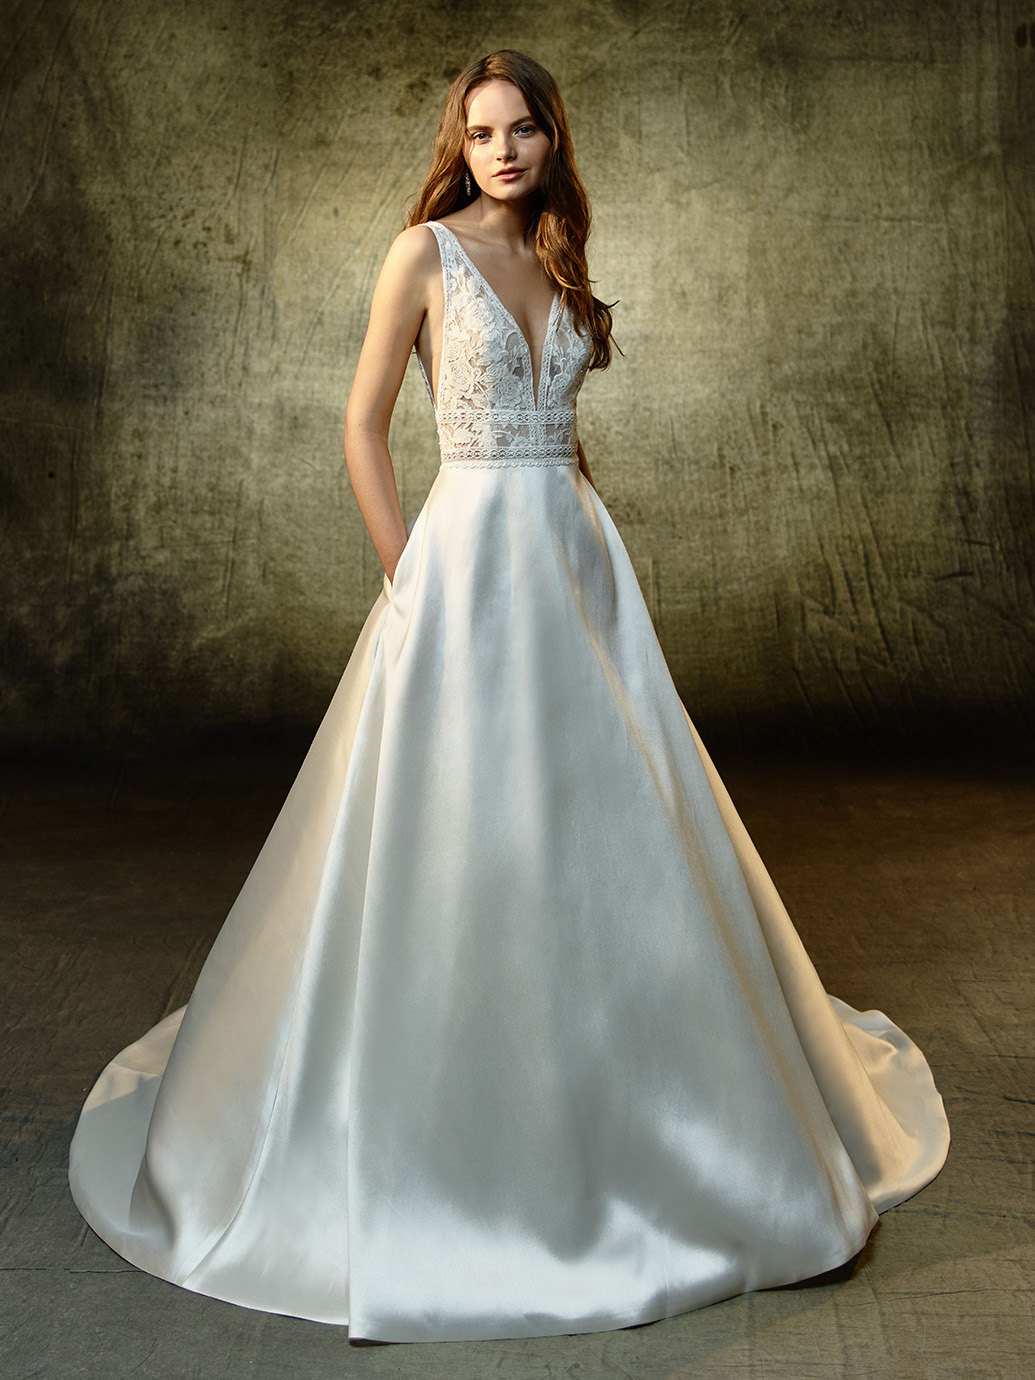 isabel marant white lace dress